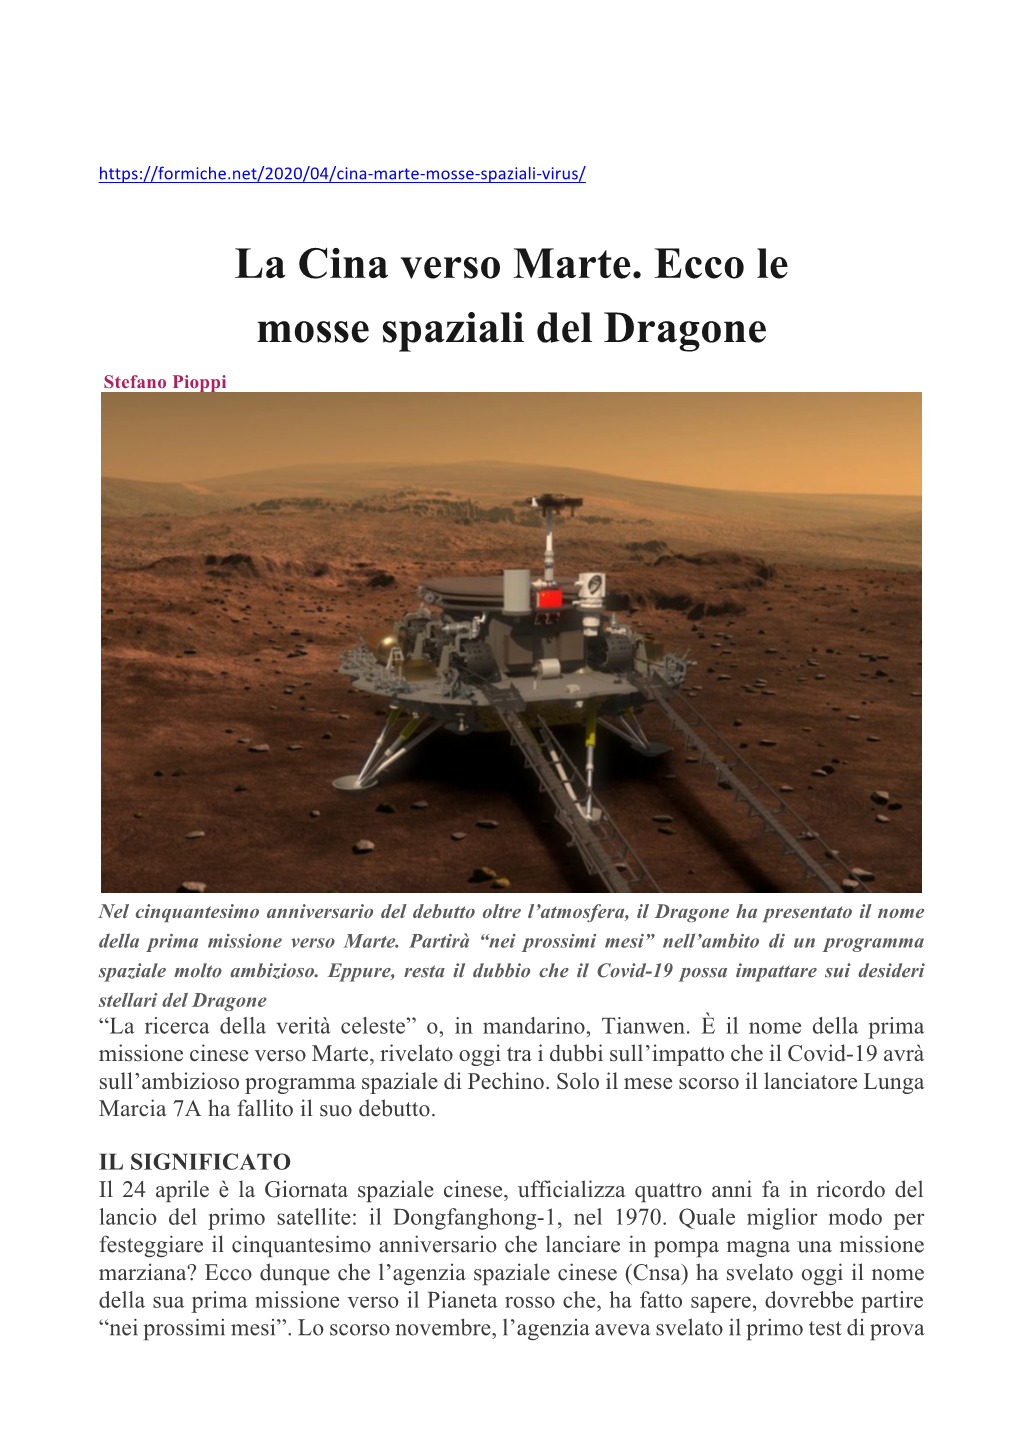 La Cina Verso Marte. Ecco Le Mosse Spaziali Del Dragone